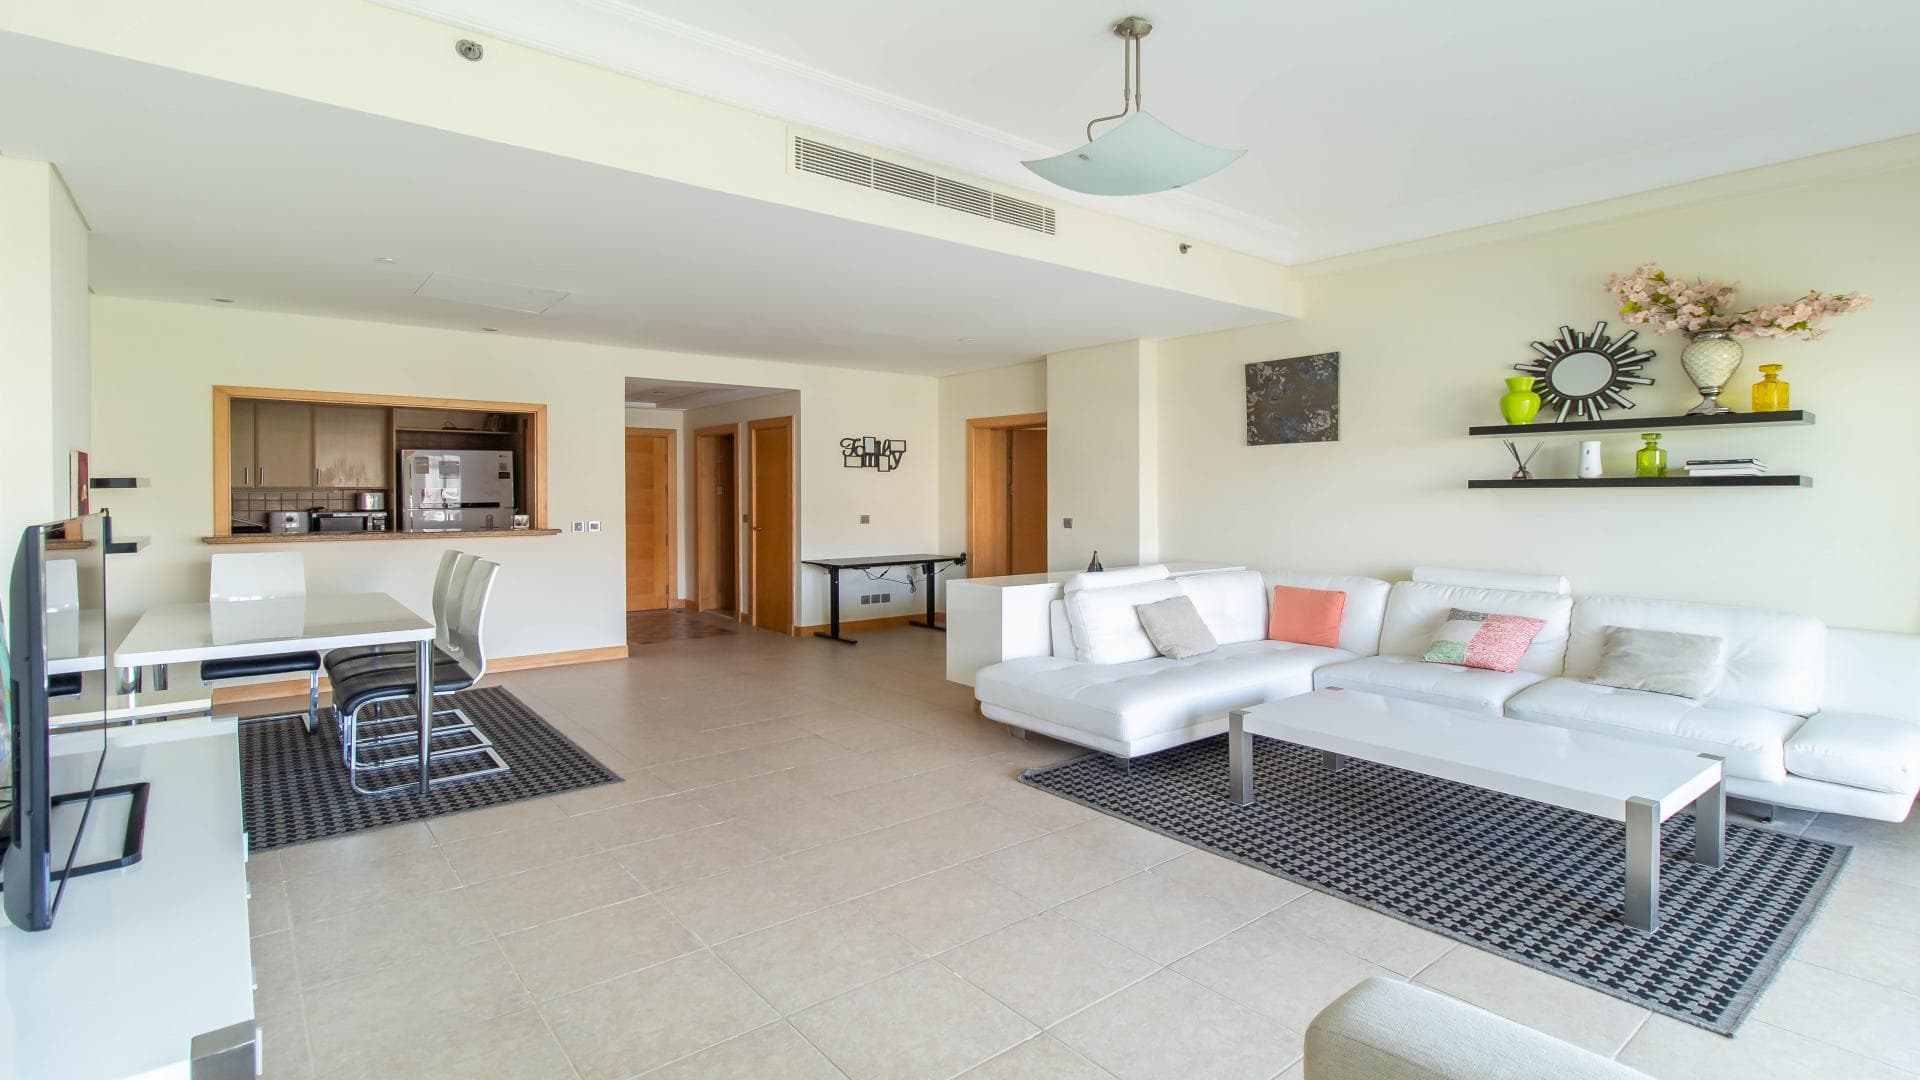 1 Bedroom Apartment For Rent Al Sheraa Tower Lp38201 24e14efa37f31400.jpg